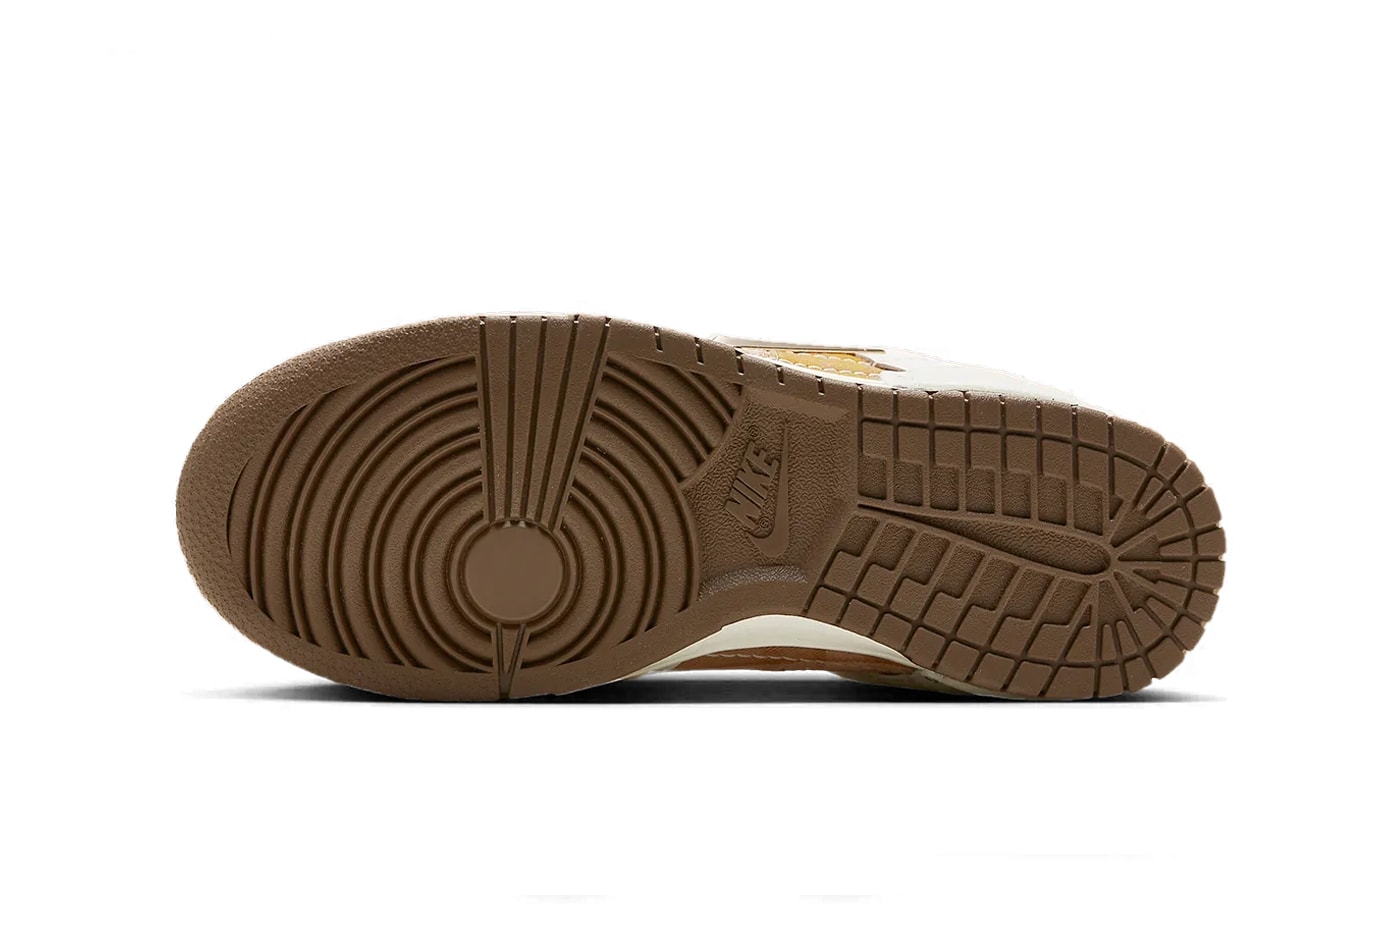 ナイキの新型モデル ダンクロー ディスラプト 2からチェック柄が目を引くプレイドが登場 Nike Dunk Low Disrupt 2 Receives a "Plaid" Makeover FV3640-071 gold tan brown swoosh low top 